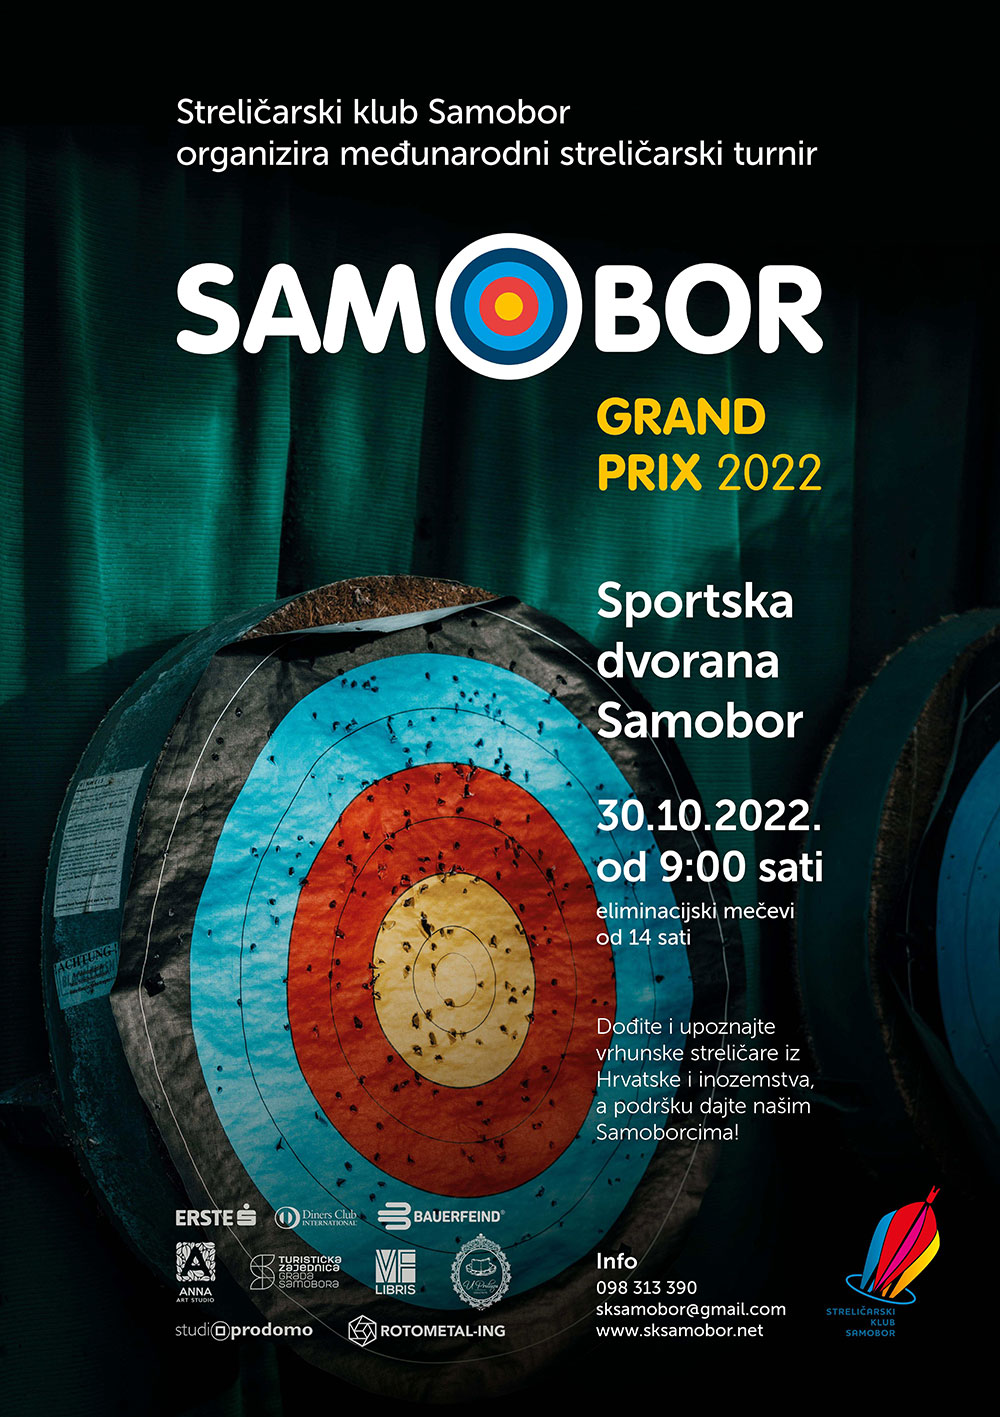 1. Meunarodni streliarski turnir Grand Prix 2022 u Samoboru
